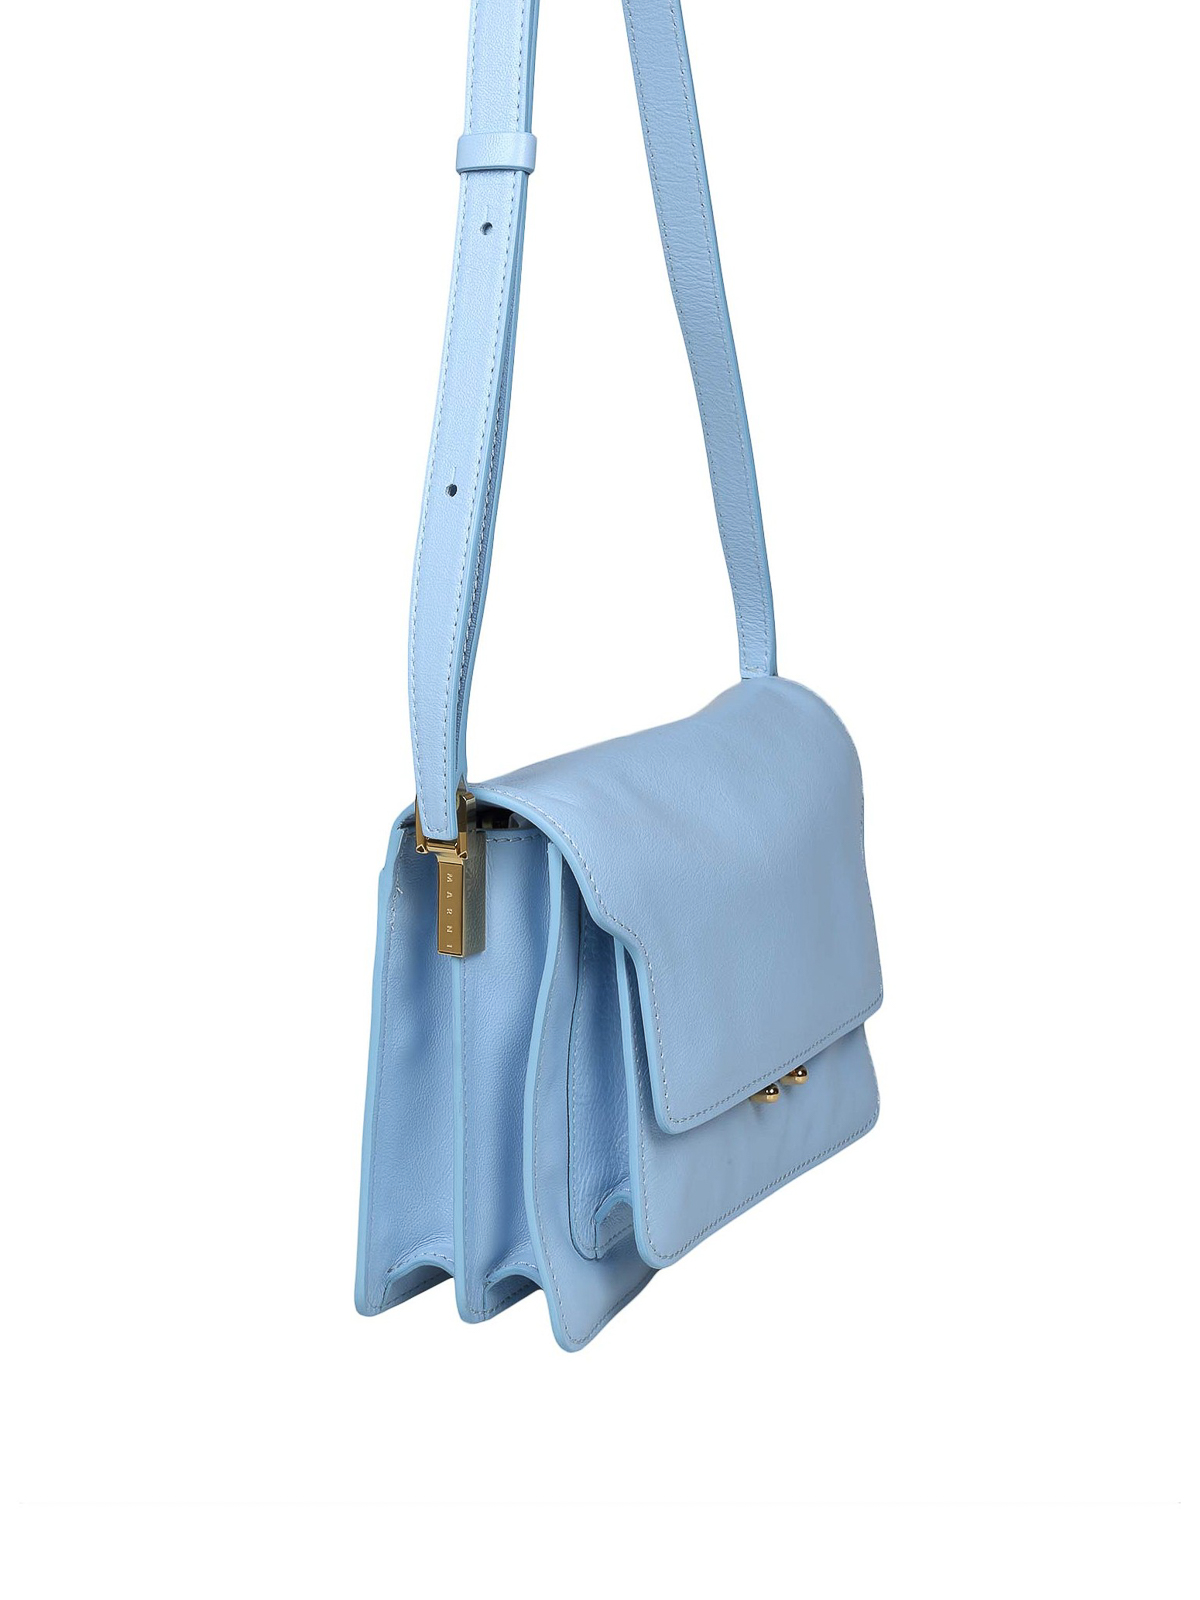 Marni Trunk - Shoulder bag for Woman - Light Blue